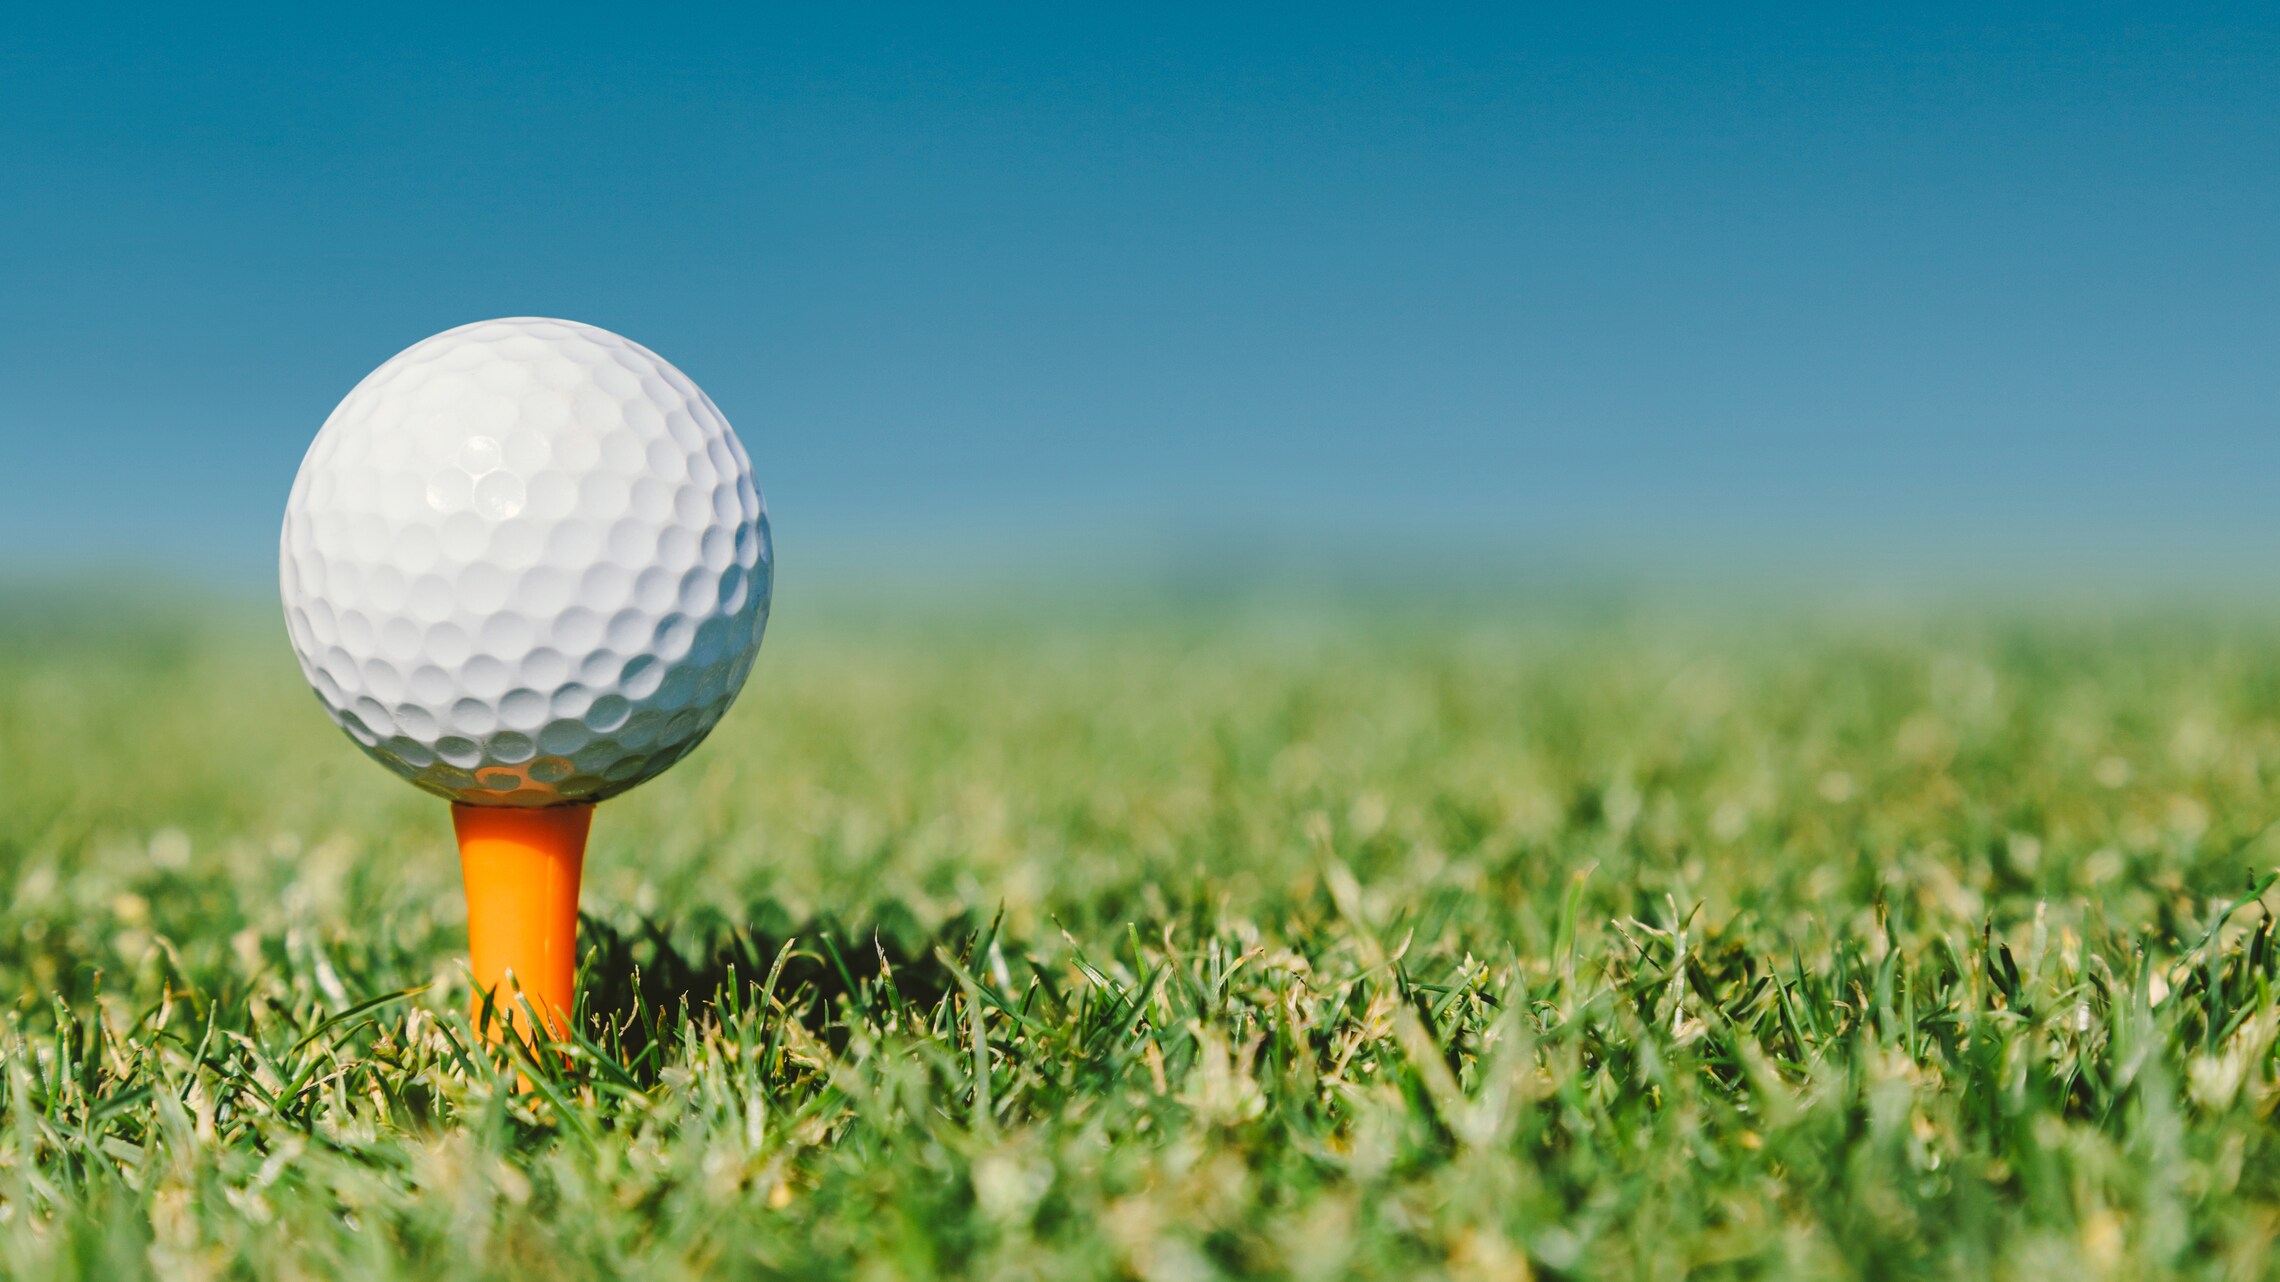 St. Regis hotels feature golf courses